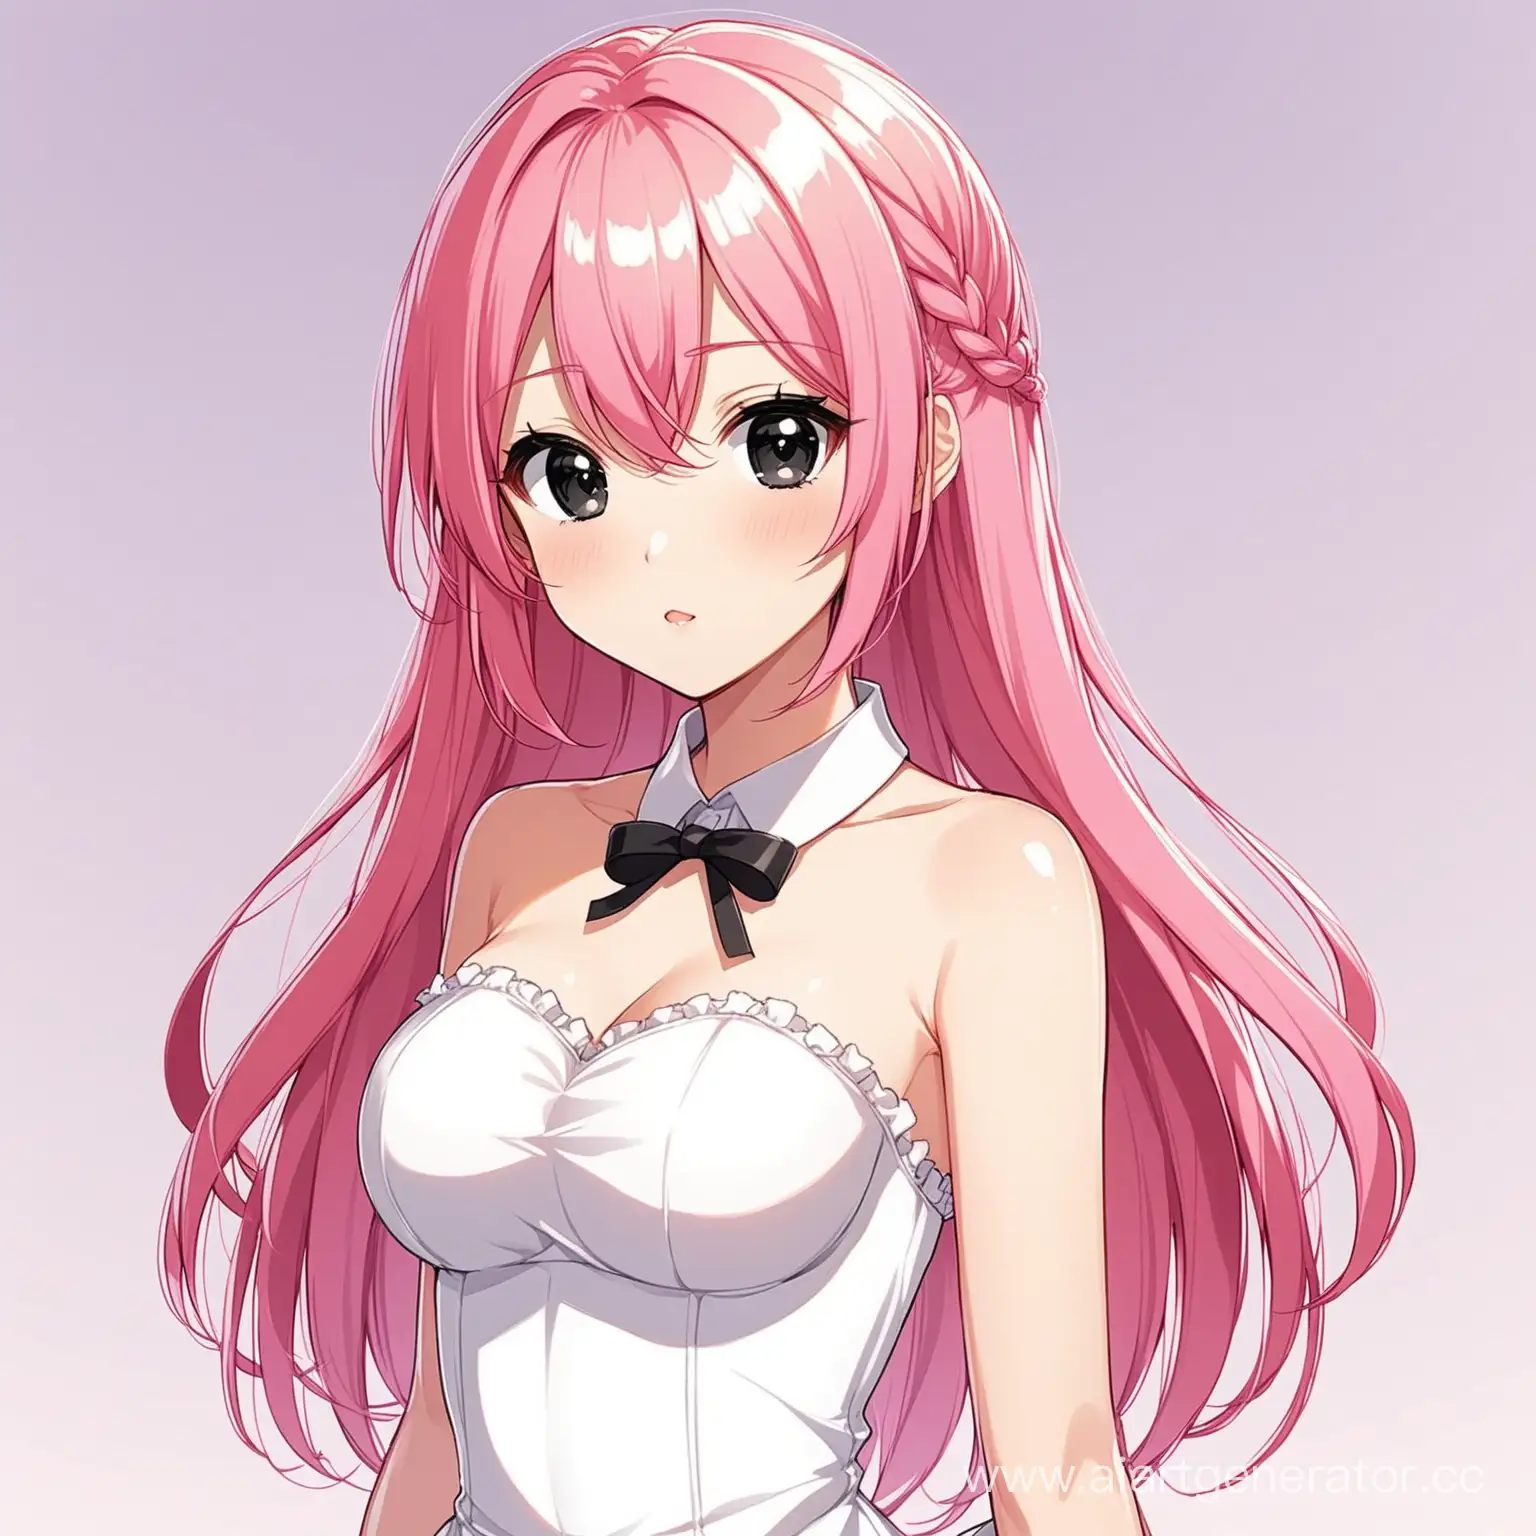 Anime-Style-PinkHaired-VTuber-Girl-in-Elegant-White-Dress